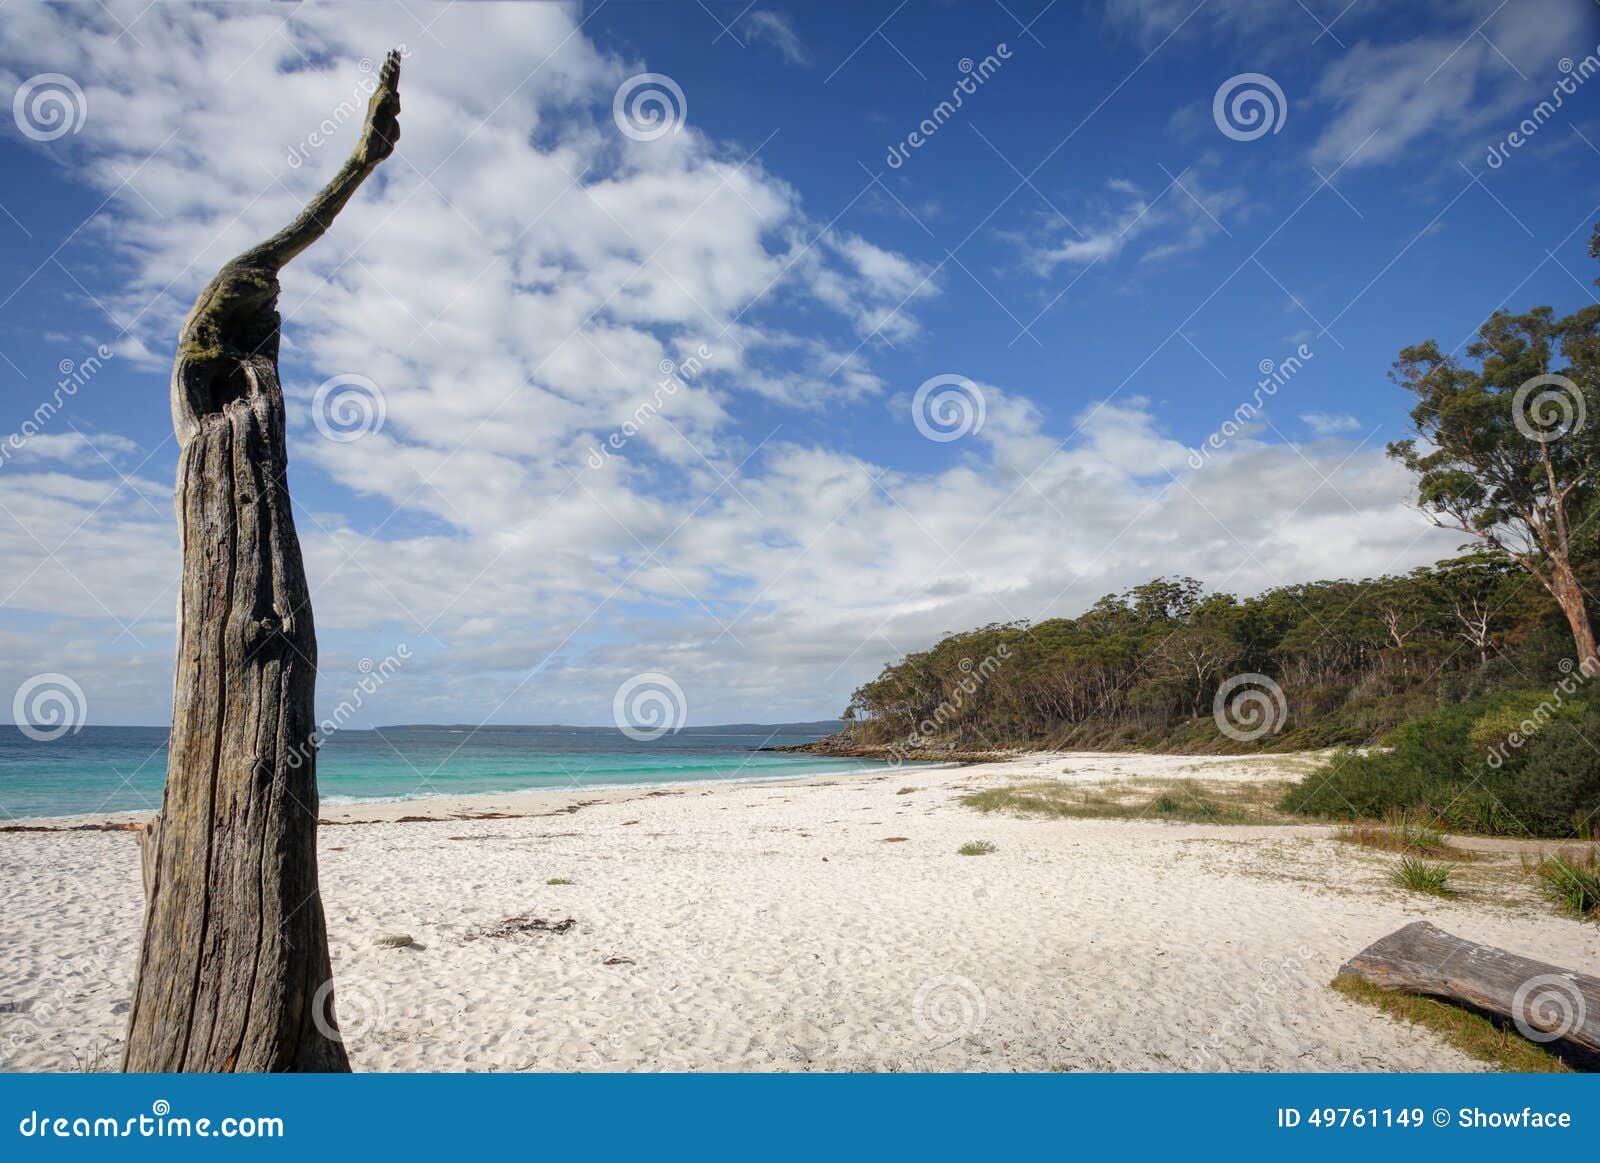 greenfields beach jervis bay australia